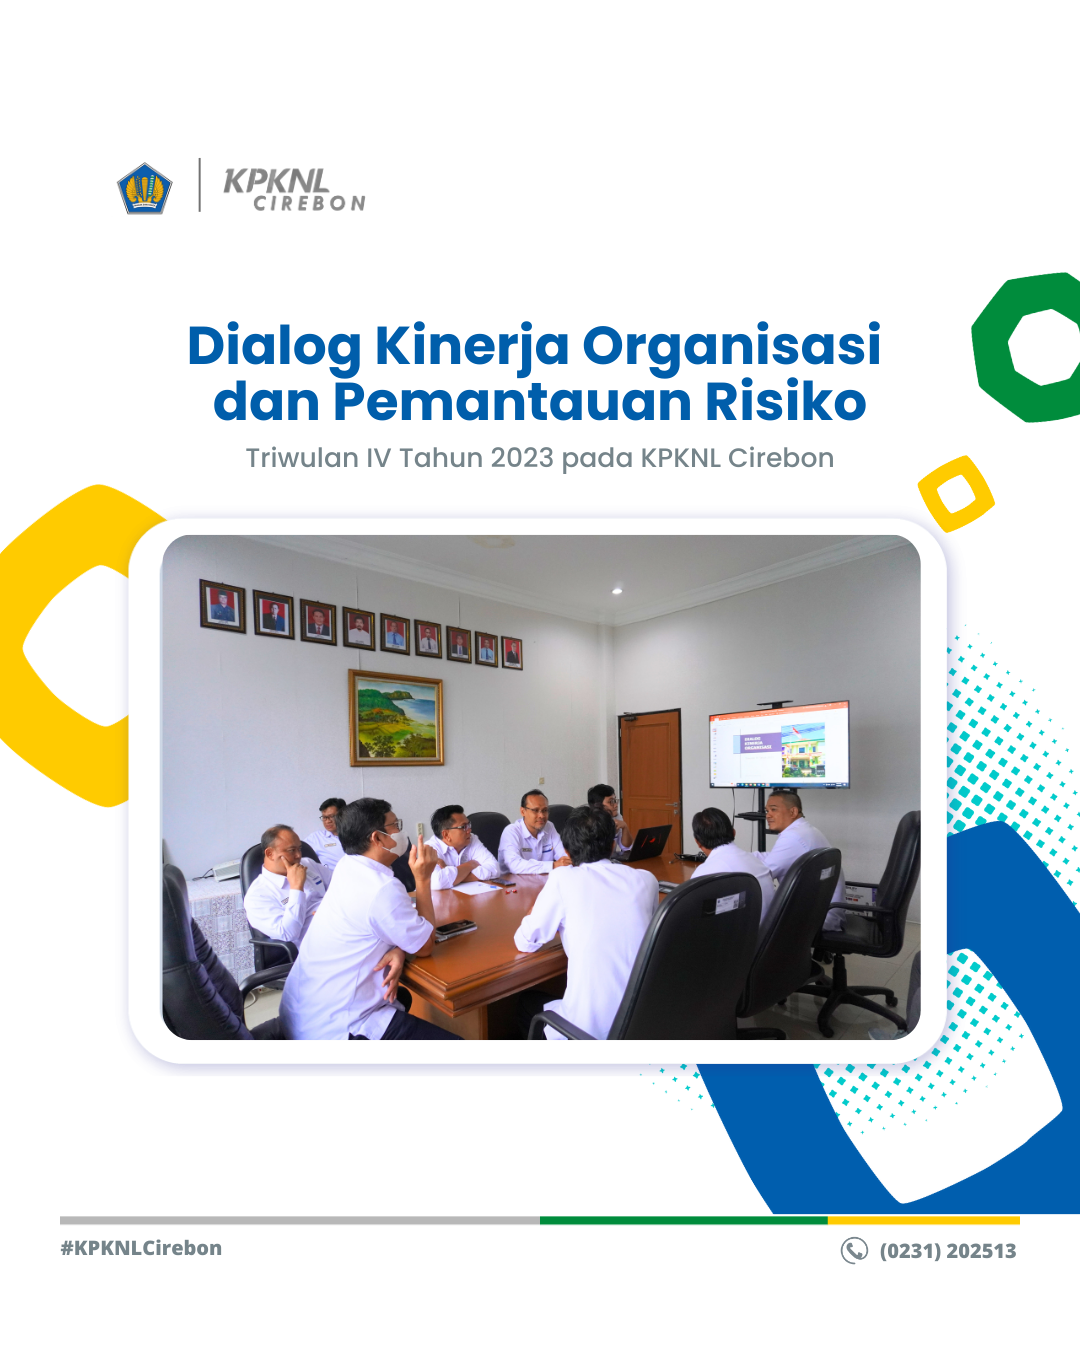 Dialog Kinerja Organisasi dan Pemantauan Risiko Triwulan IV Tahun 2023 pada KPKNL Cirebon